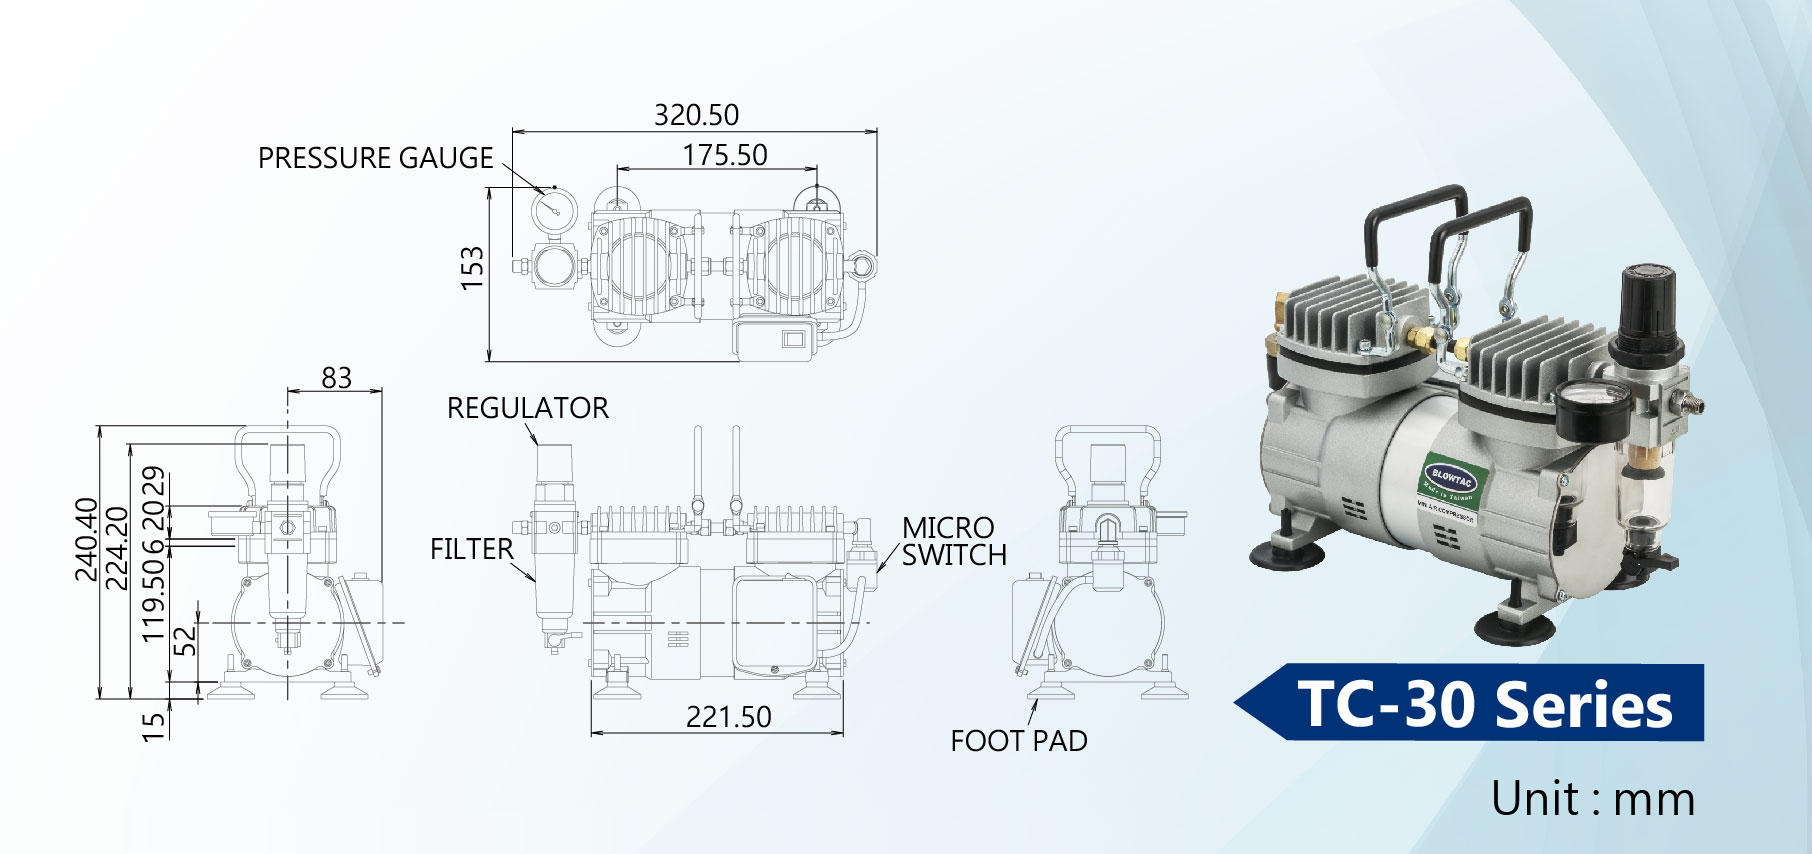 Размеры мини-компрессоров TC-30 Серии